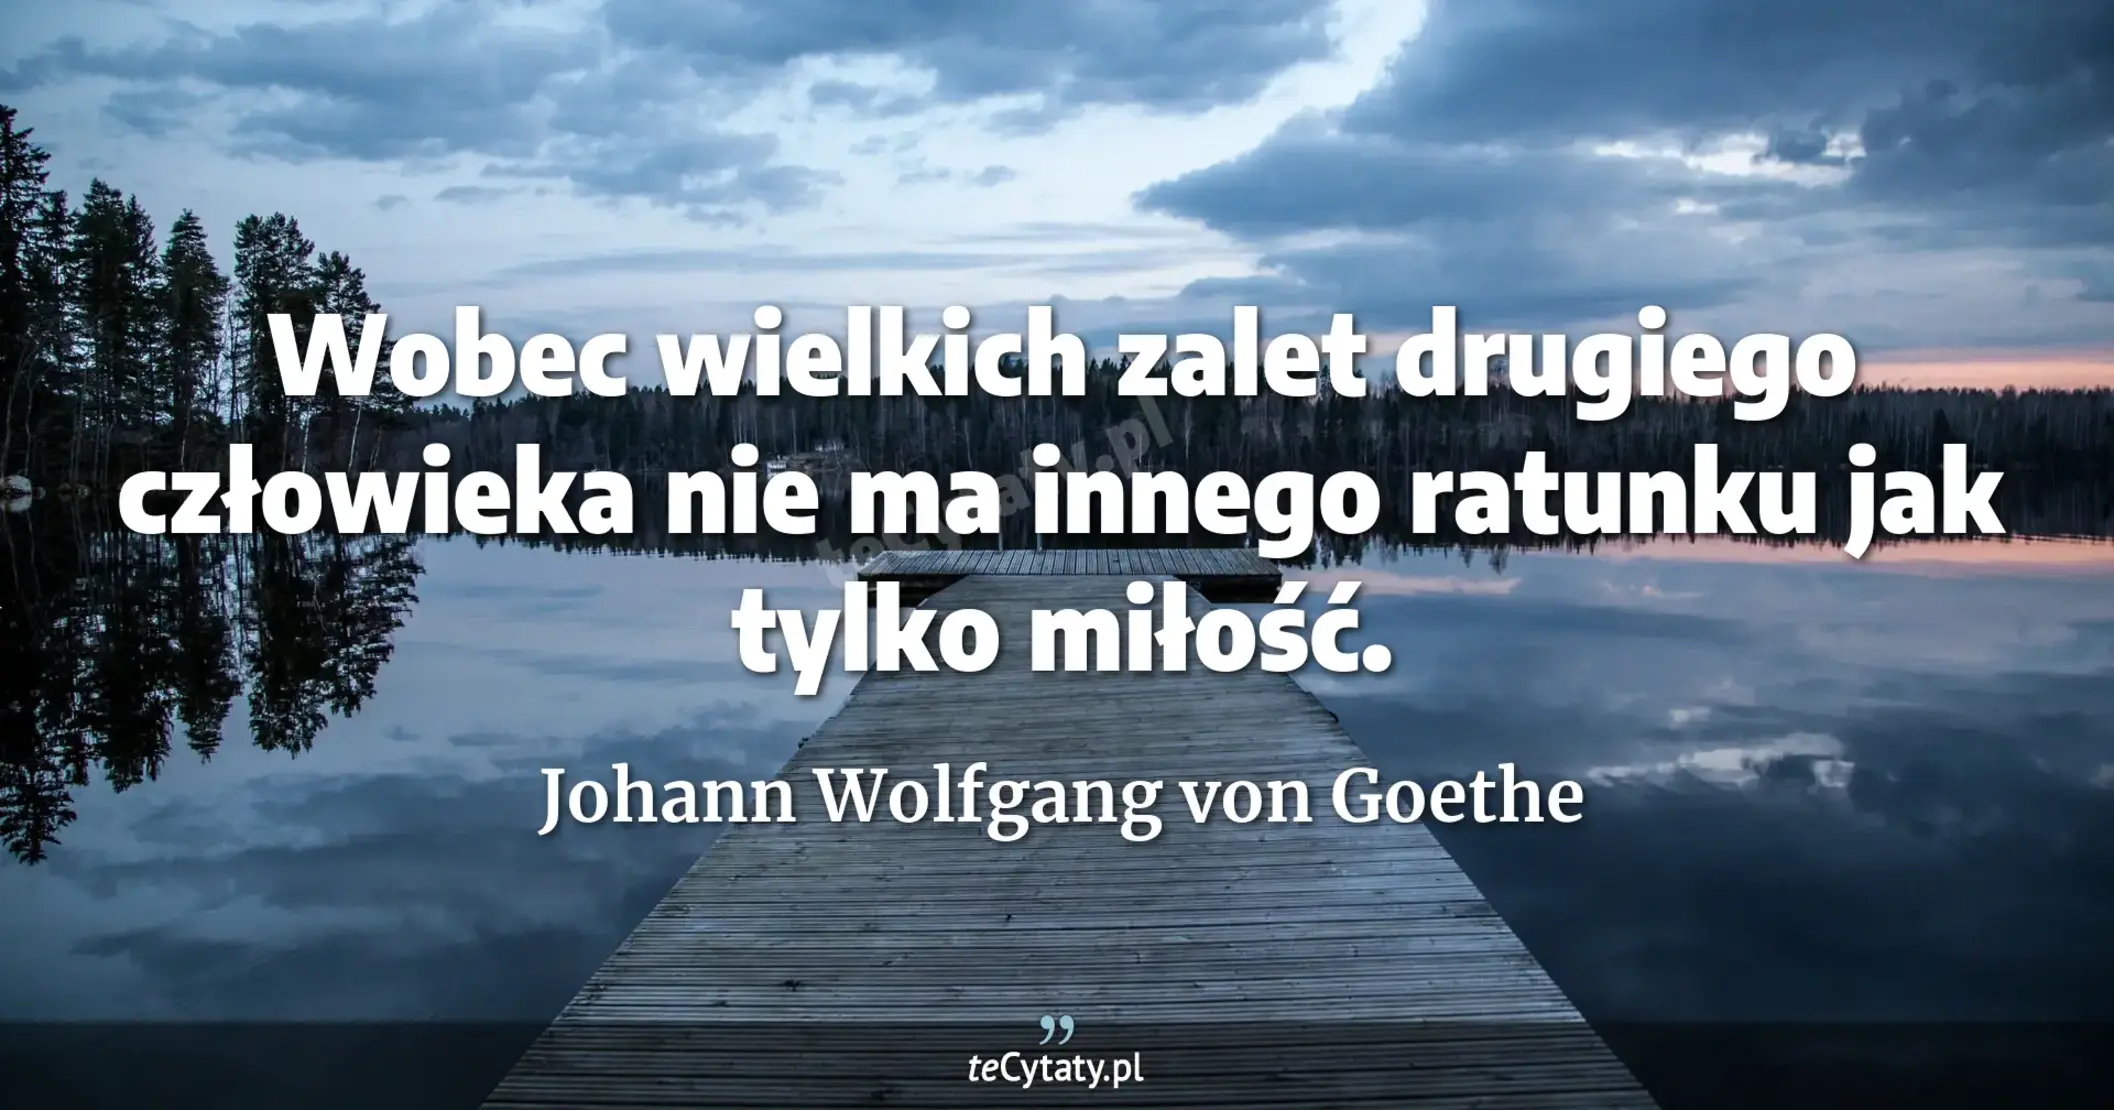 Wobec wielkich zalet drugiego człowieka nie ma innego ratunku jak tylko miłość. - Johann Wolfgang von Goethe